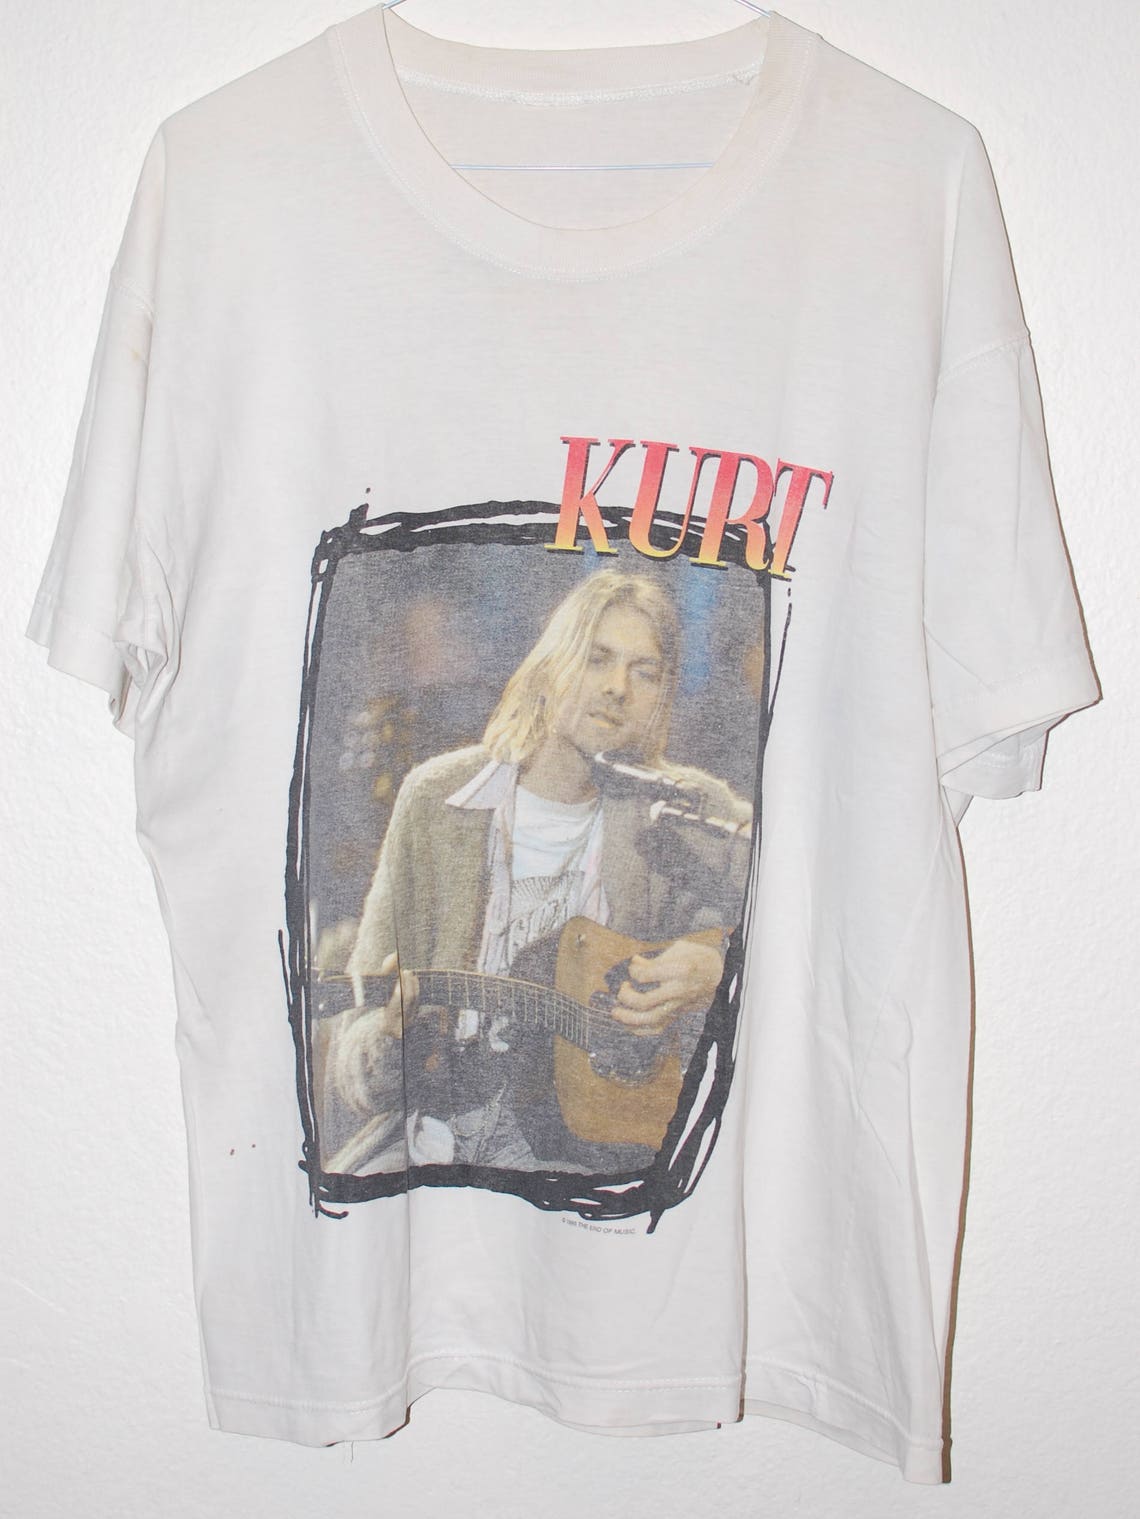 Vintage Kurt Cobain t shirt | Etsy